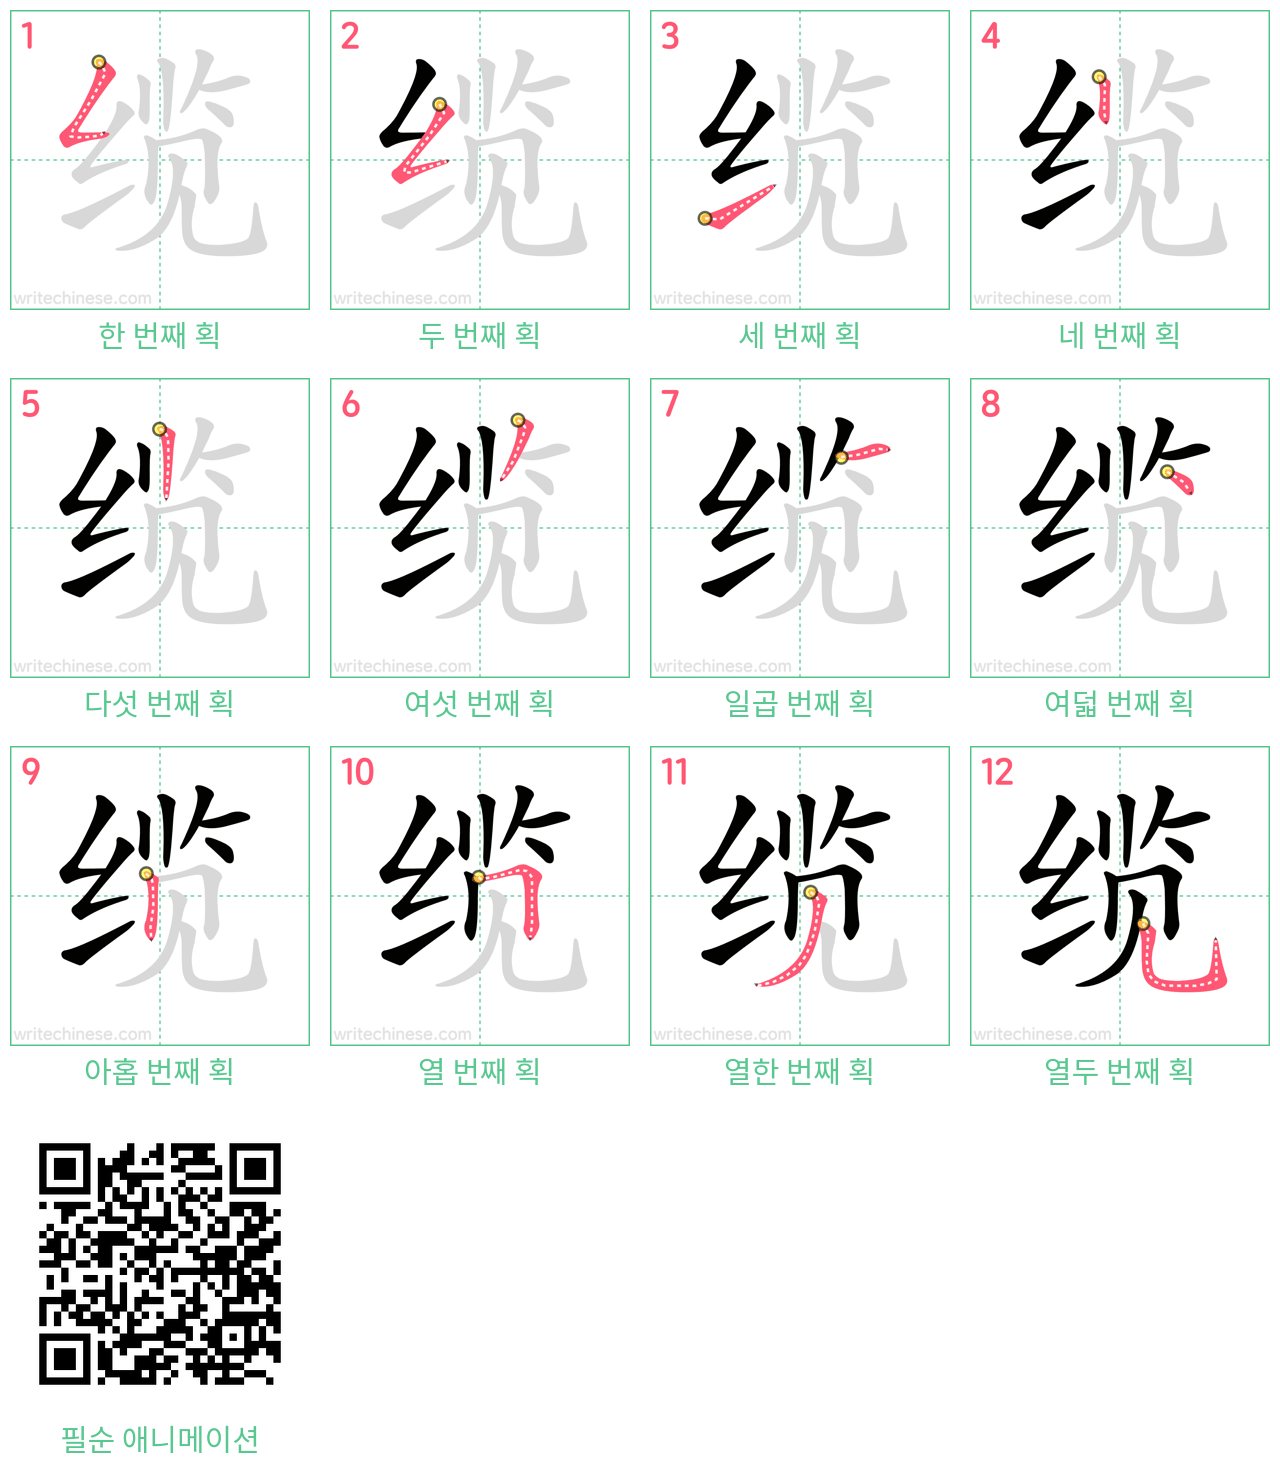 缆 step-by-step stroke order diagrams